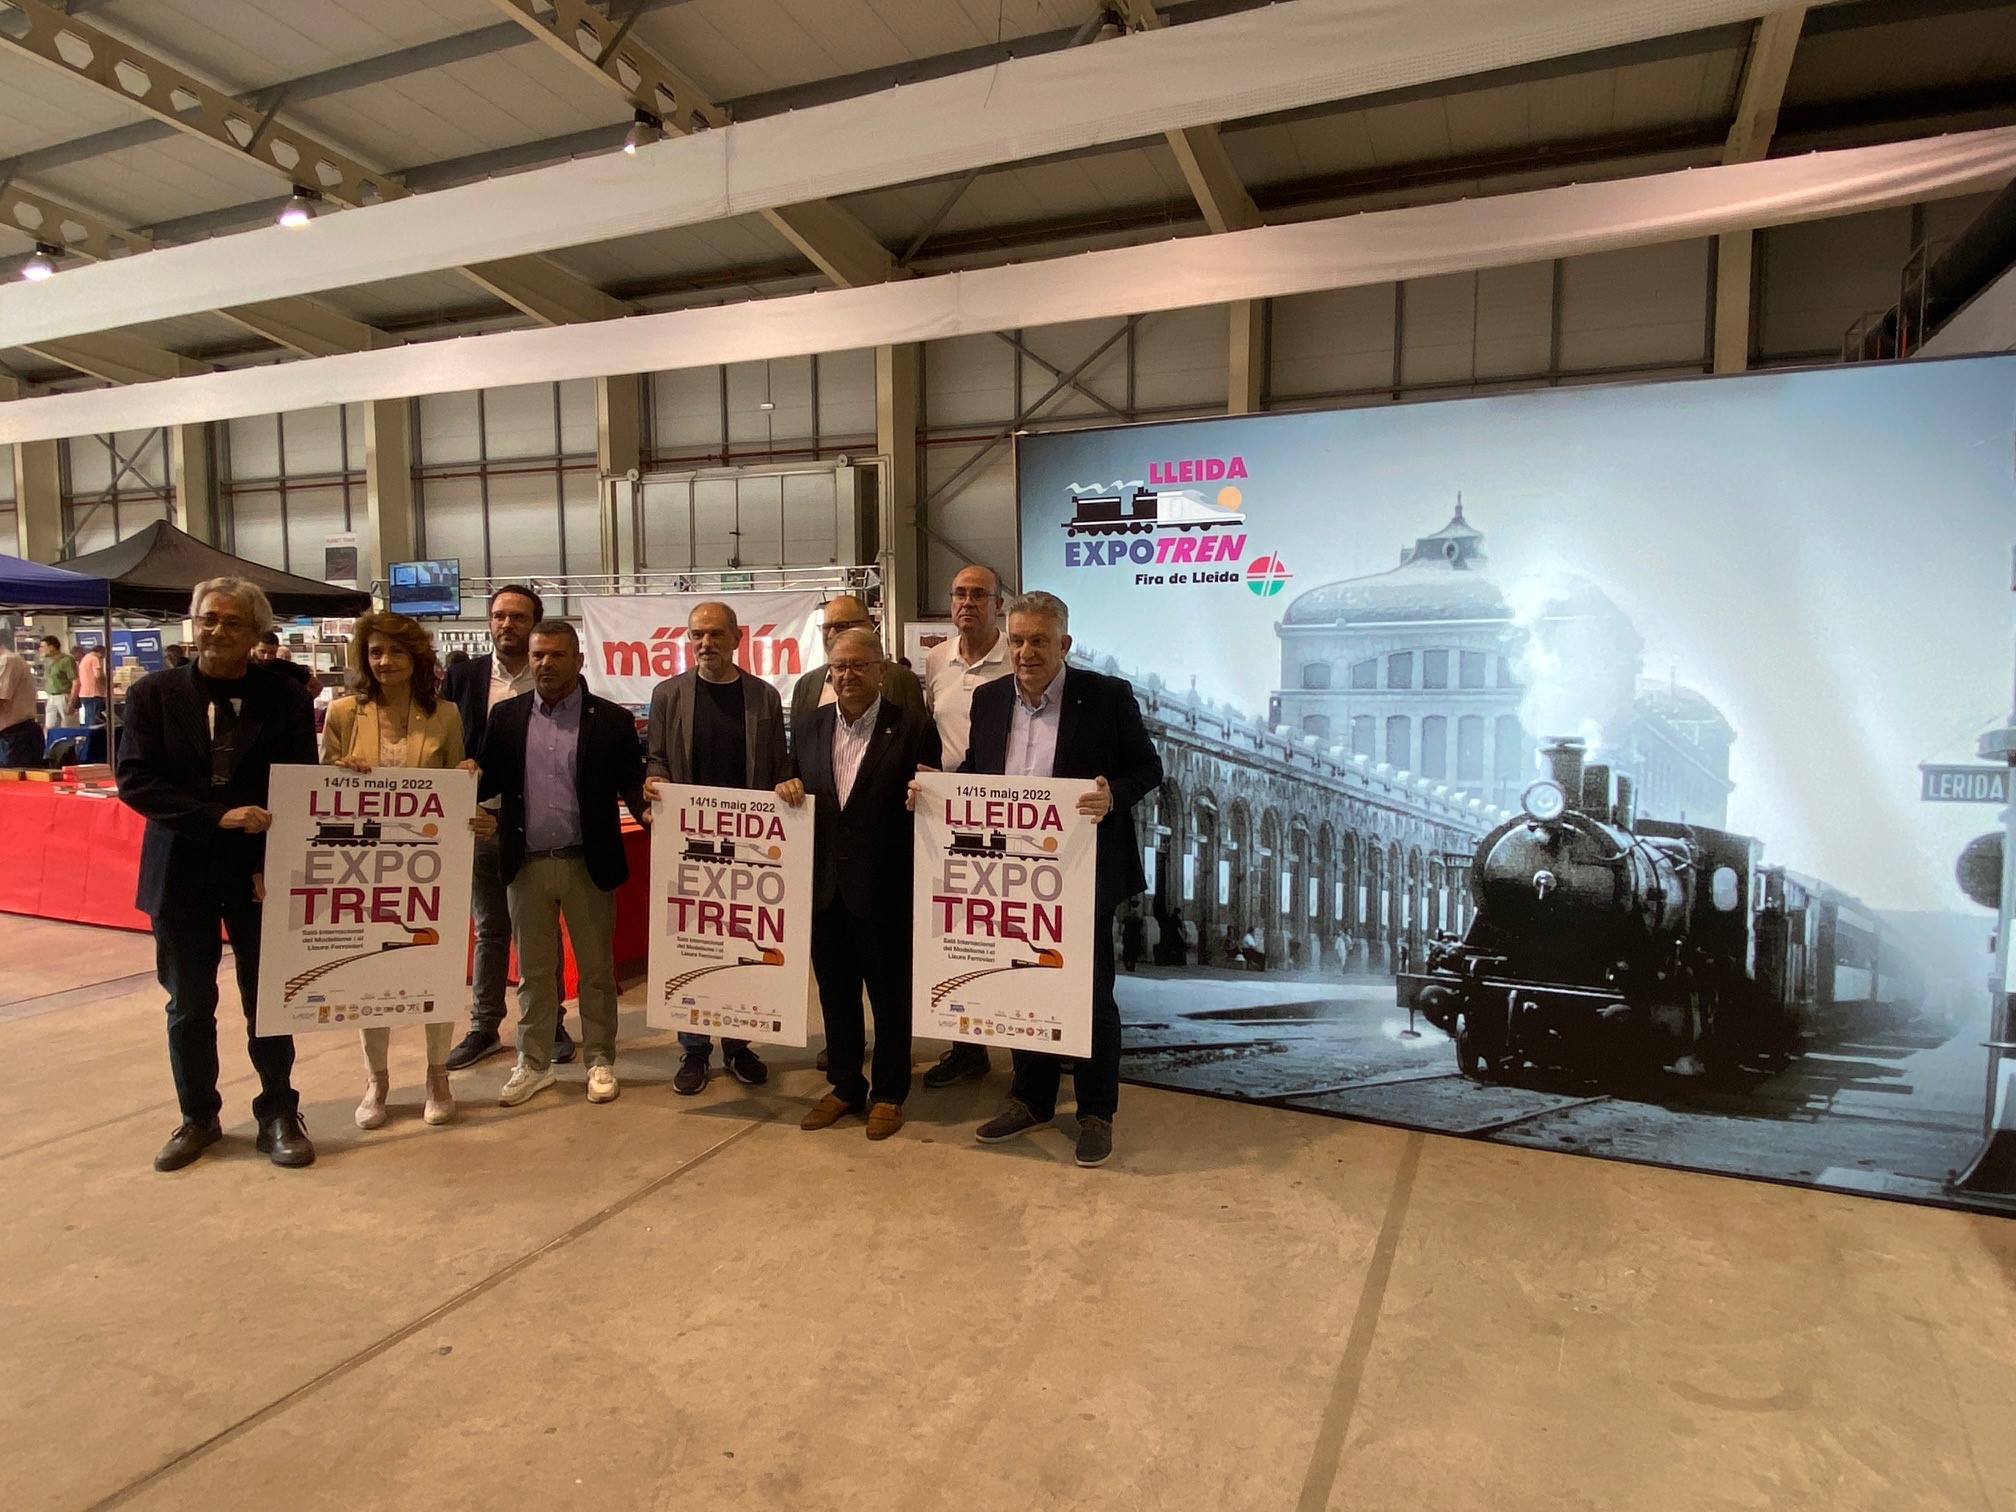 Expo Tren romandrà al Pavelló 4 de Fira de Lleida durant tot el cap de setmana